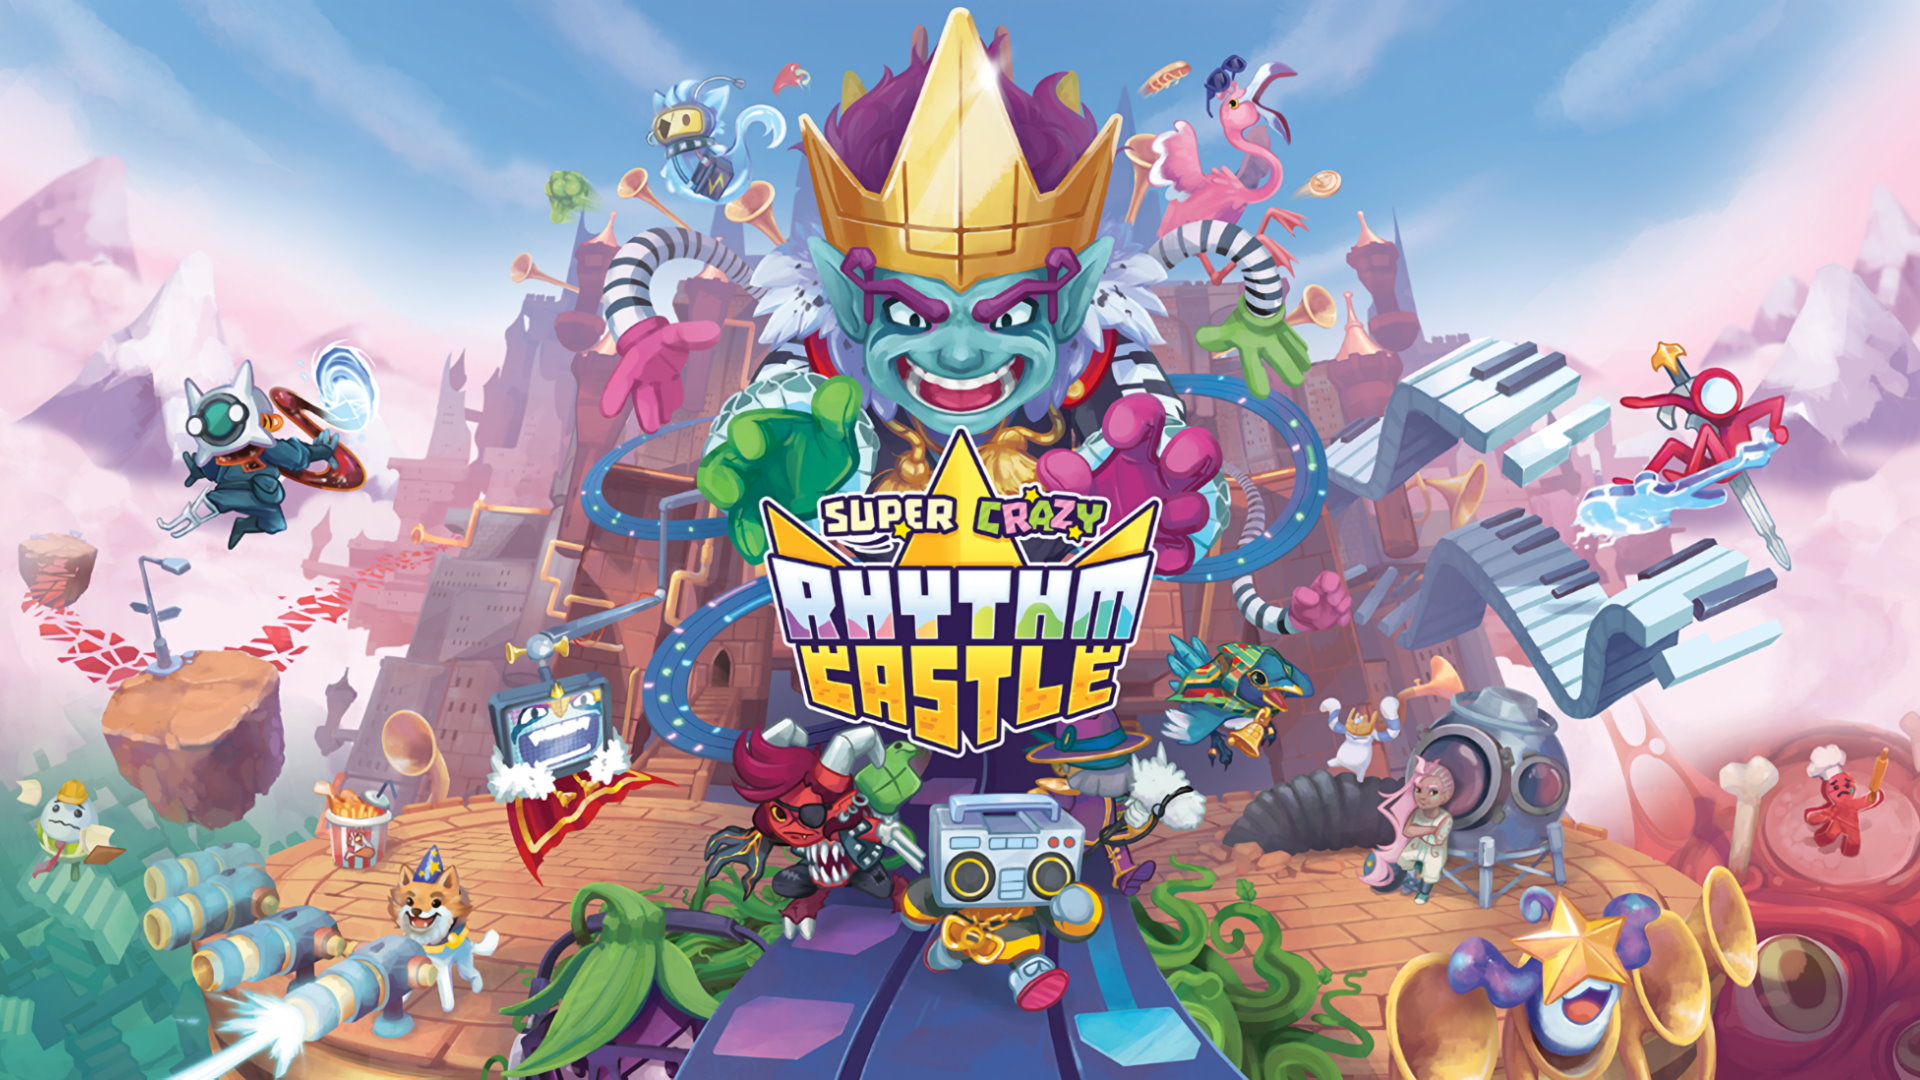 portada de Super Crazy Rhythm Castle